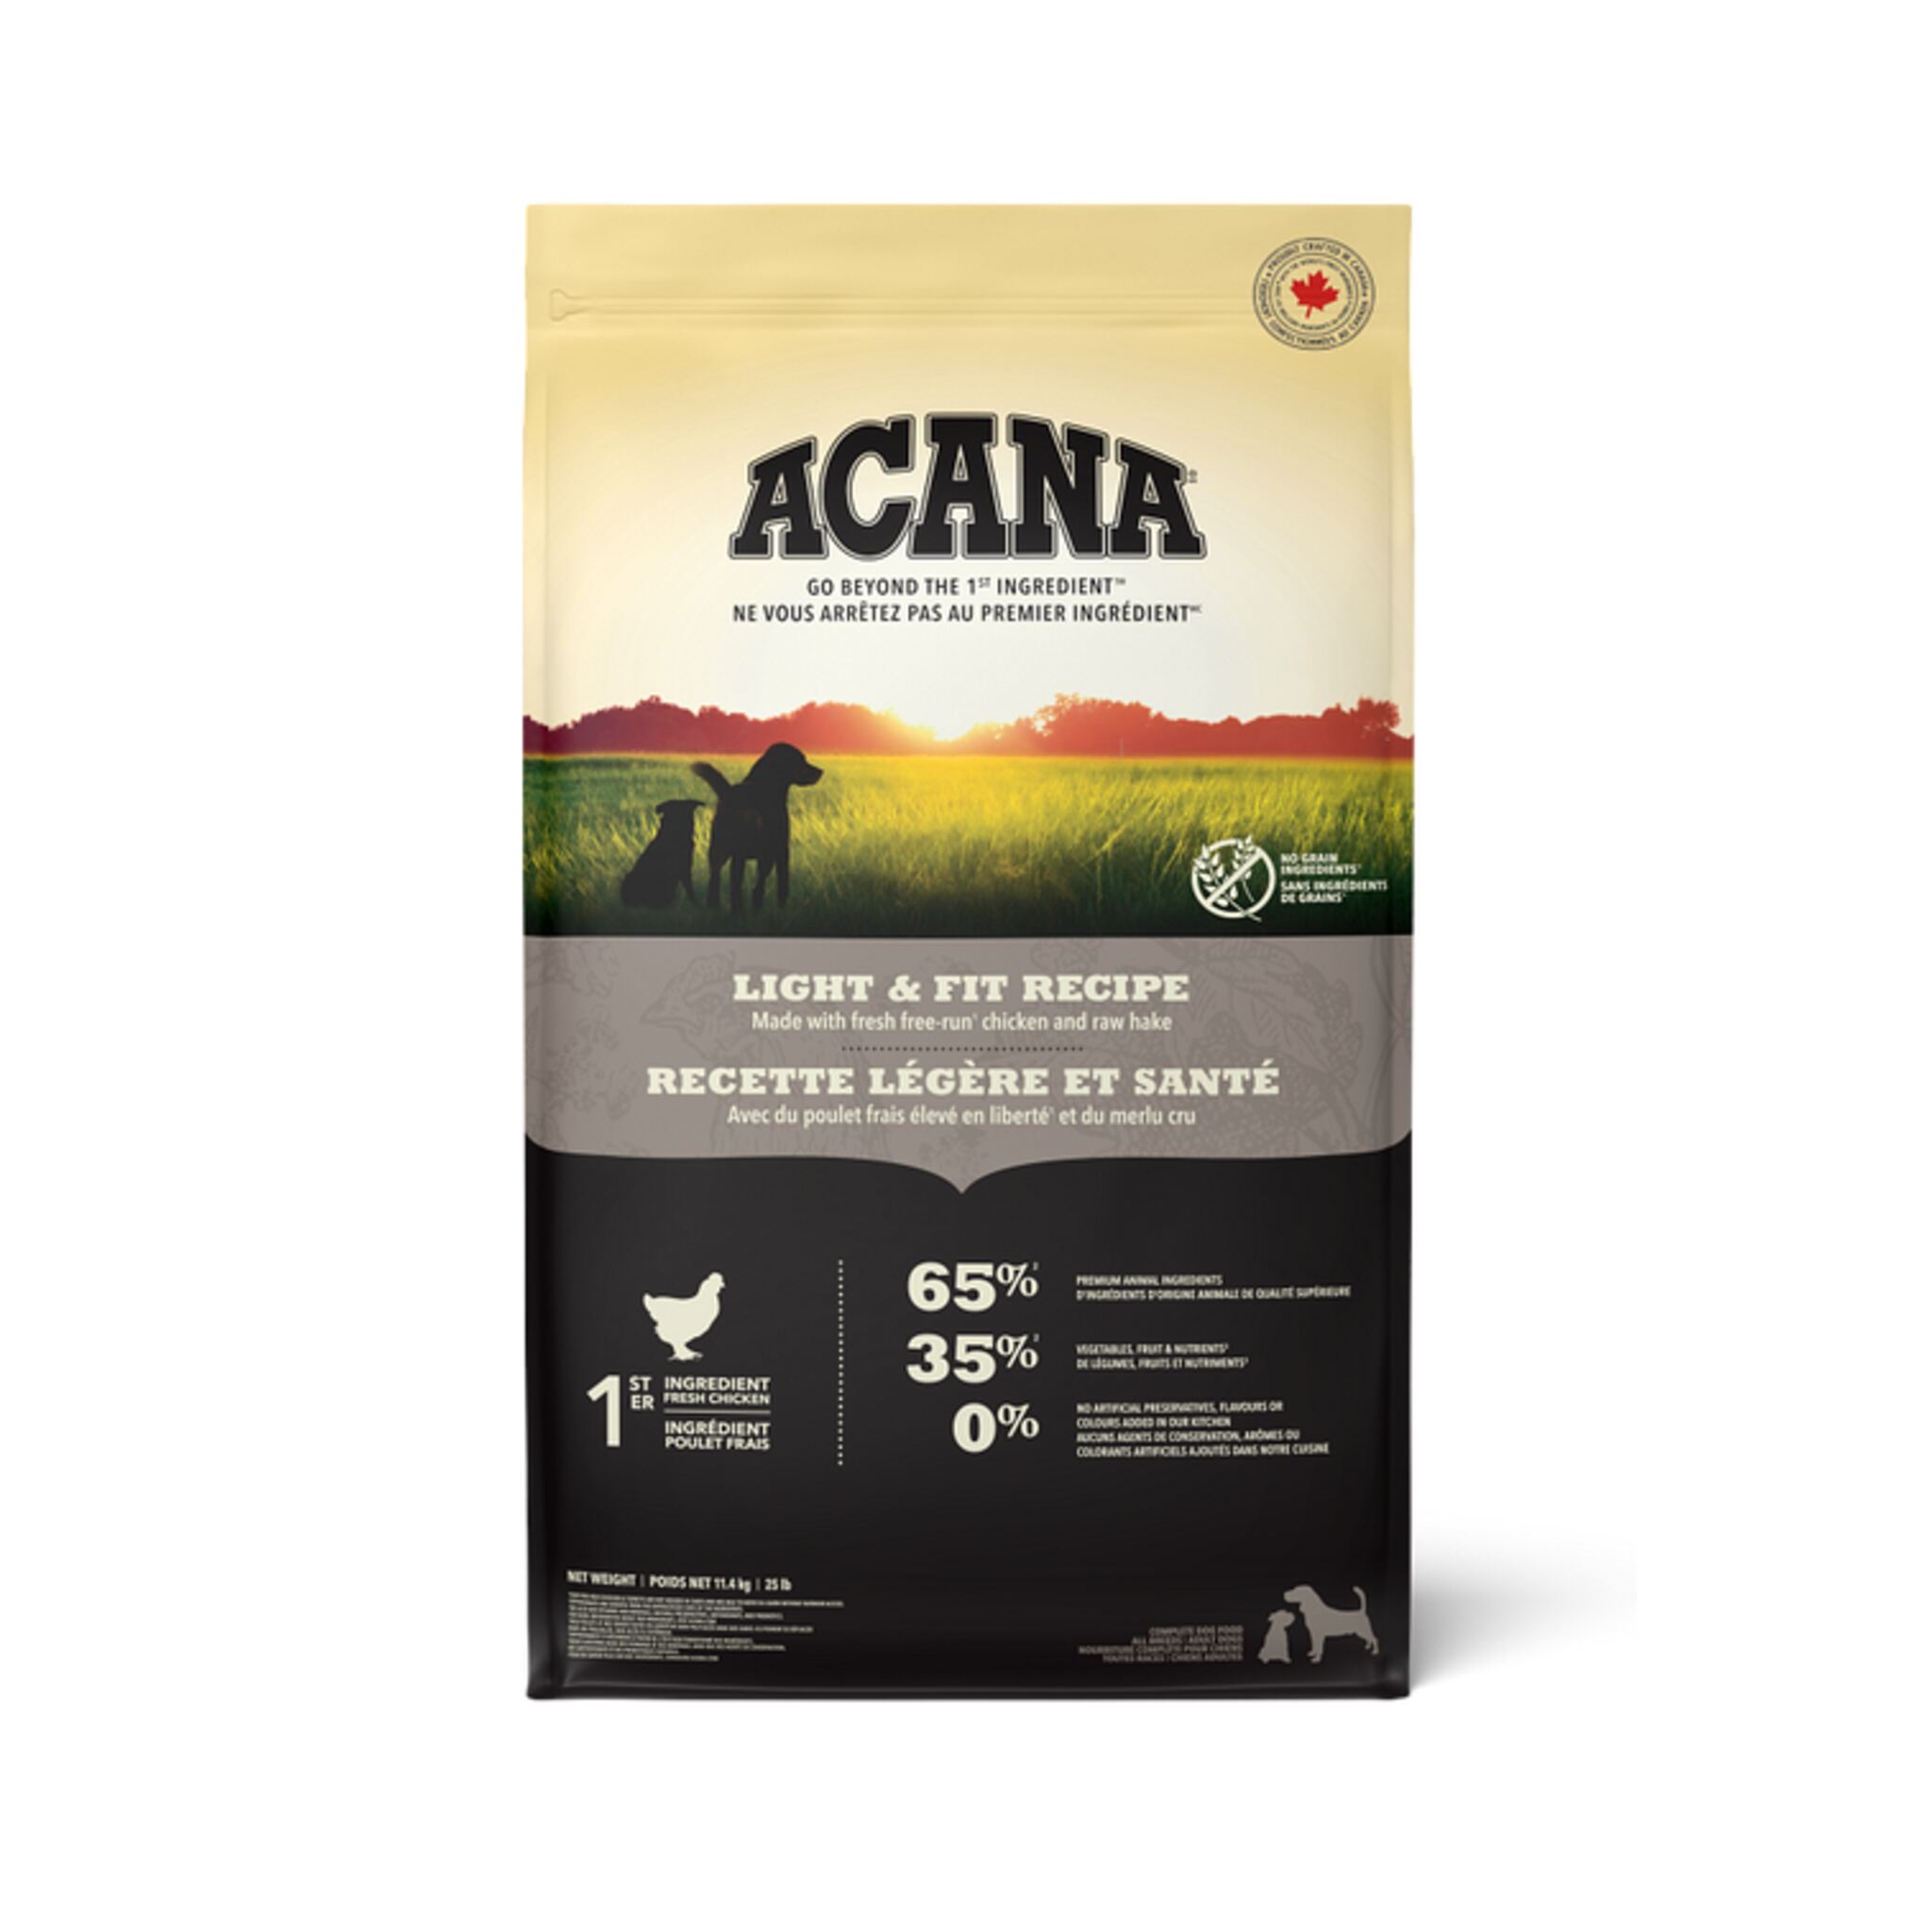 A bag of Acana dog food, Light & Fit recipe, 25 lb.